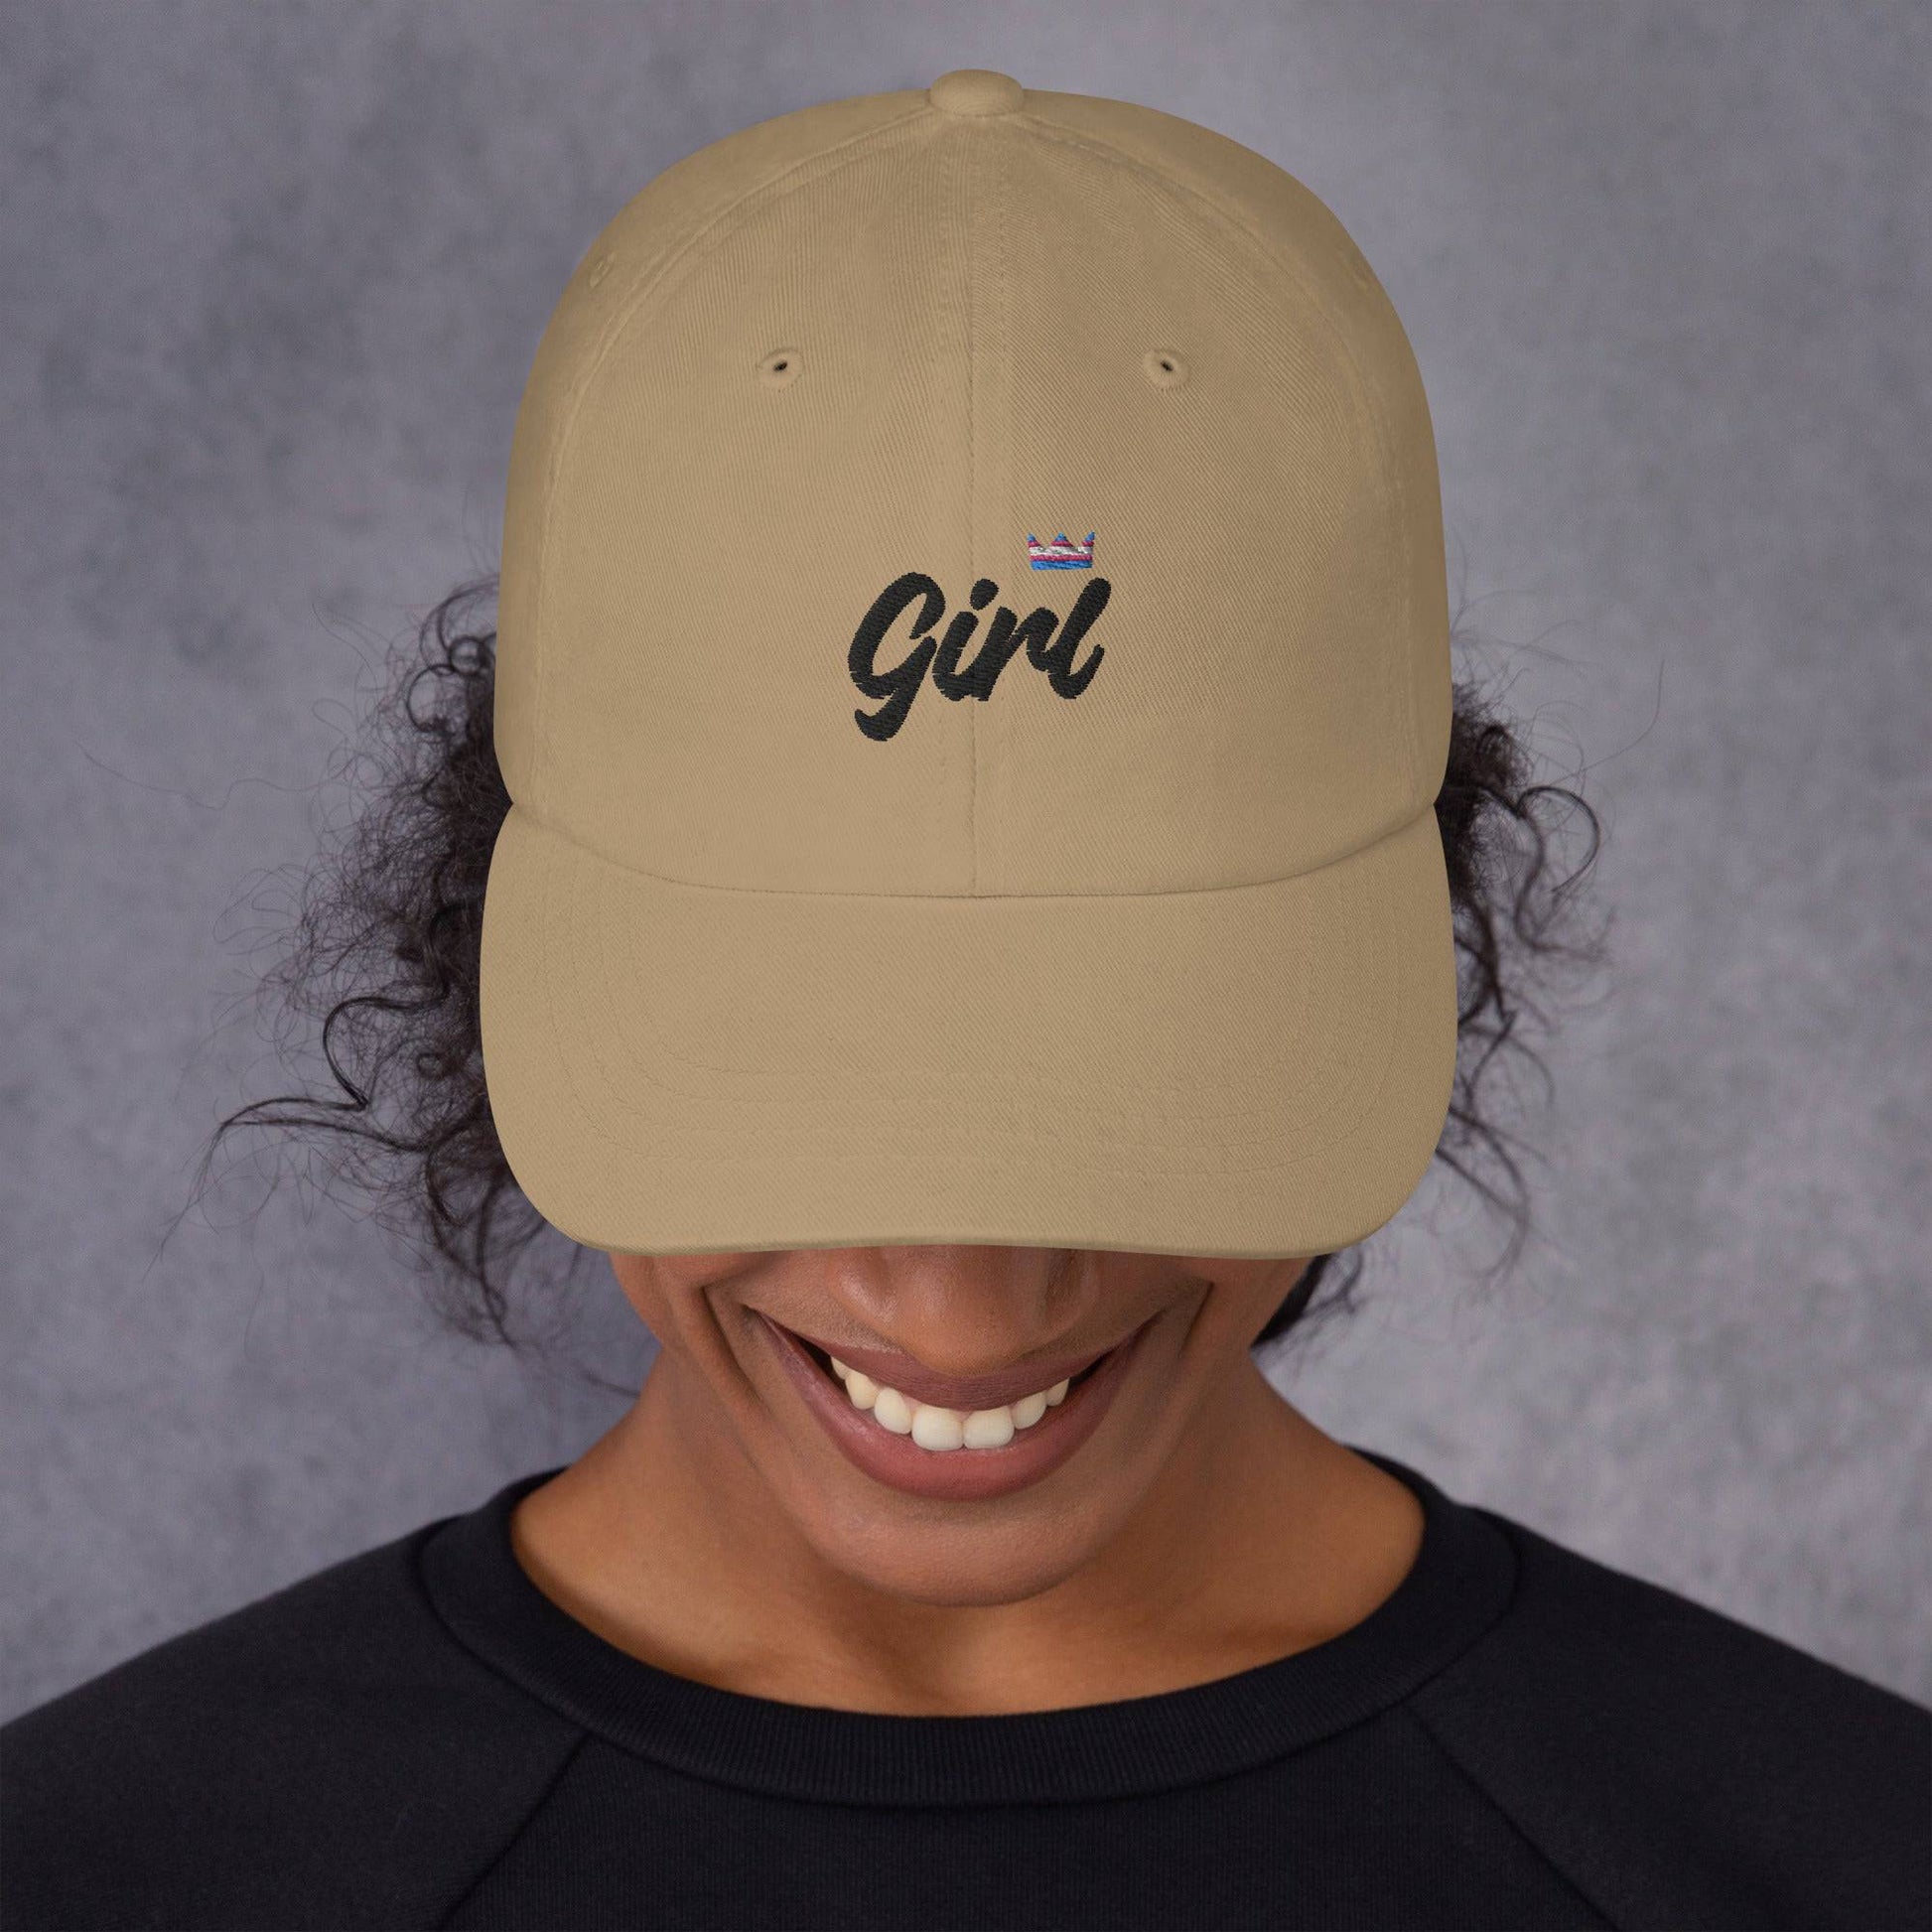 Girl Trans Pride Dad hat - Rose Gold Co. Shop